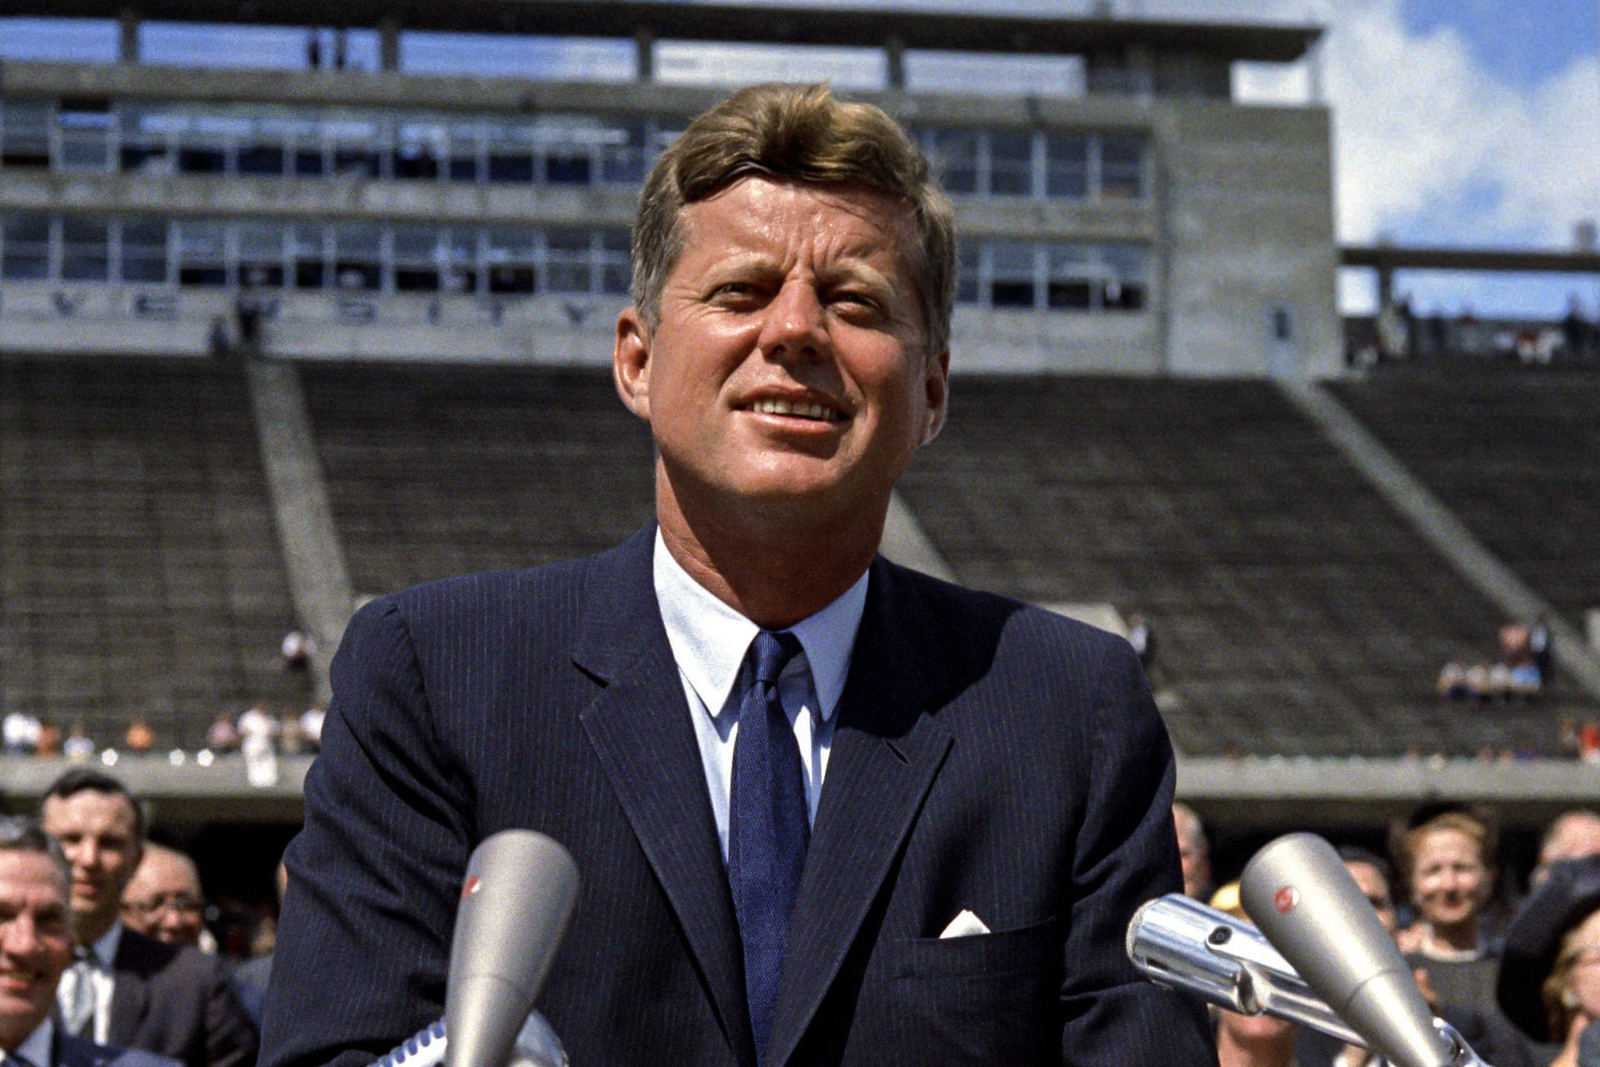 President John F. Kennedy speaking at Rice University